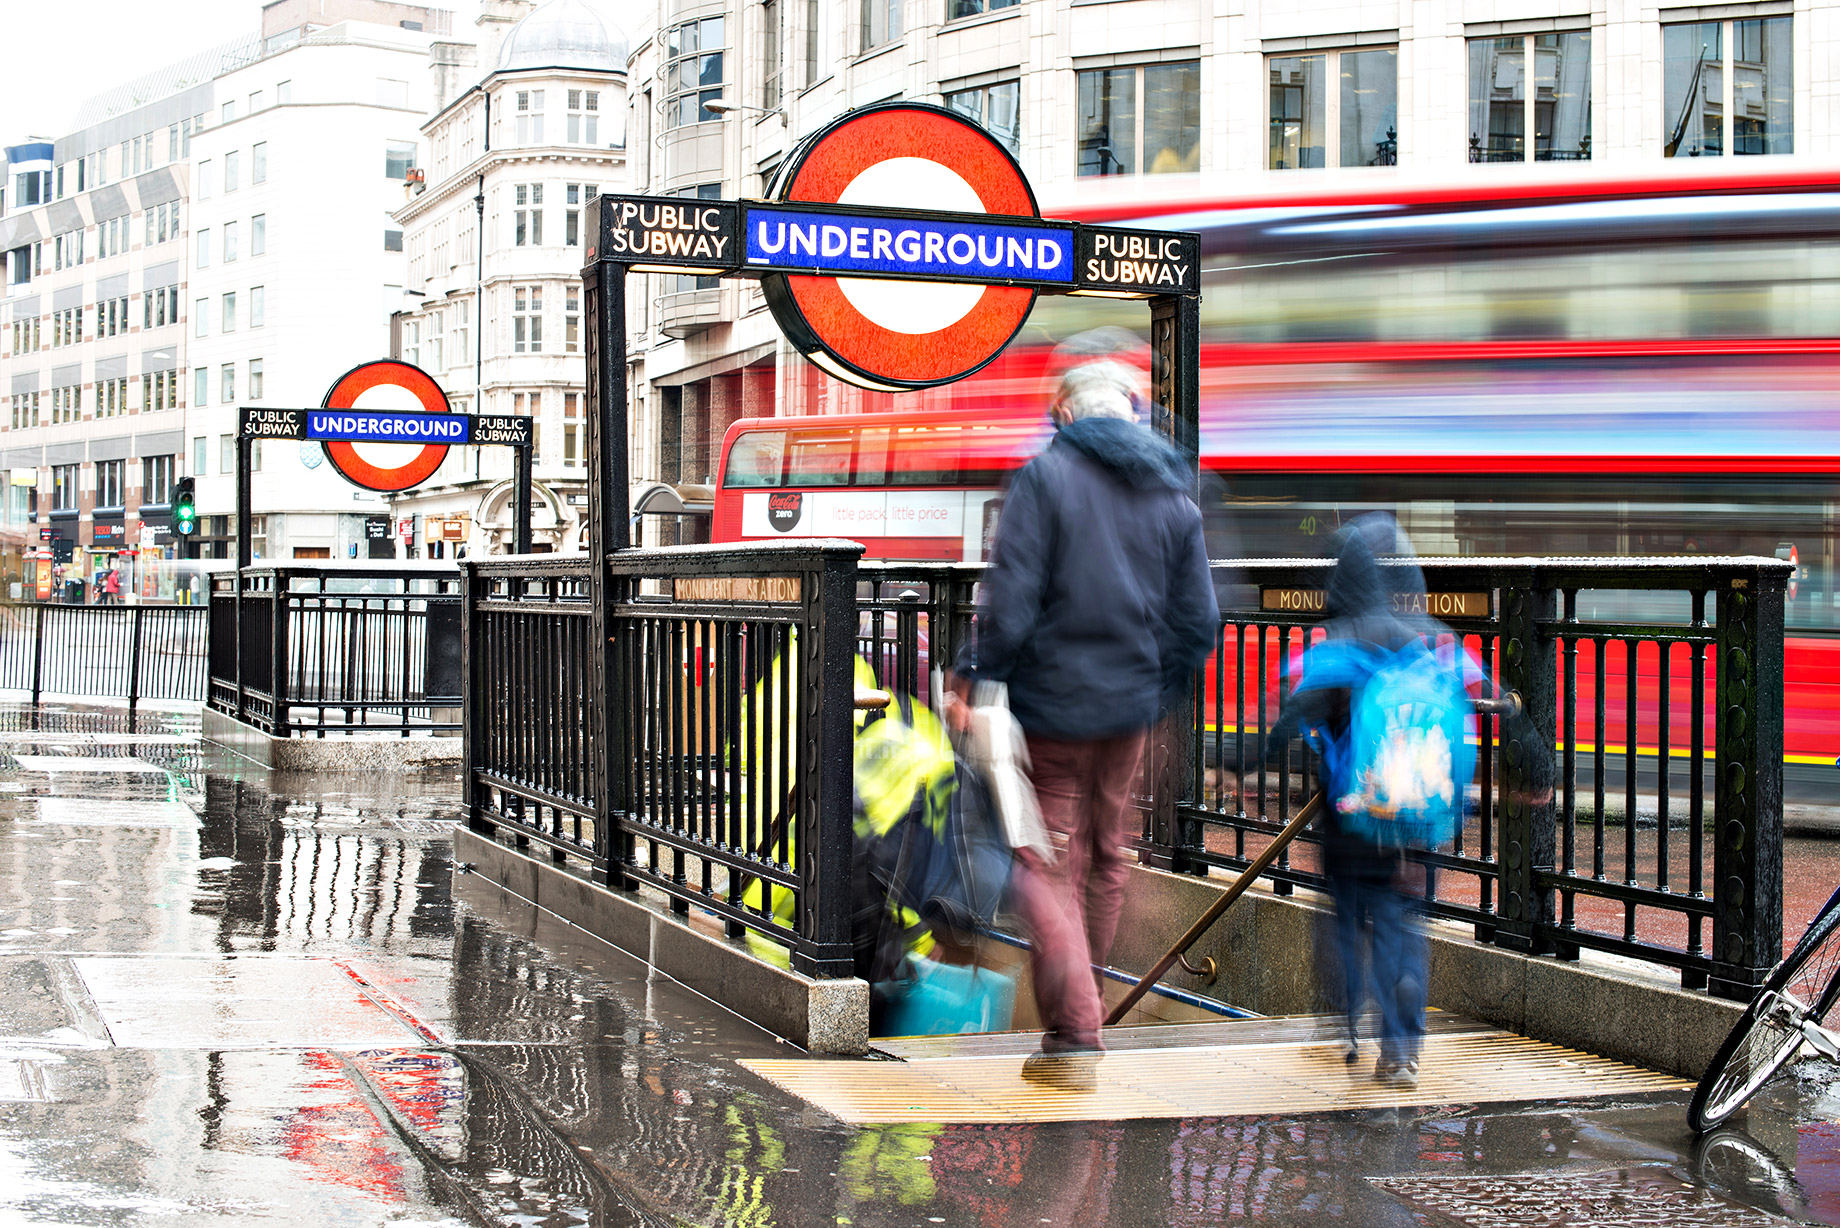 London Underground - The Tube - Public Subway